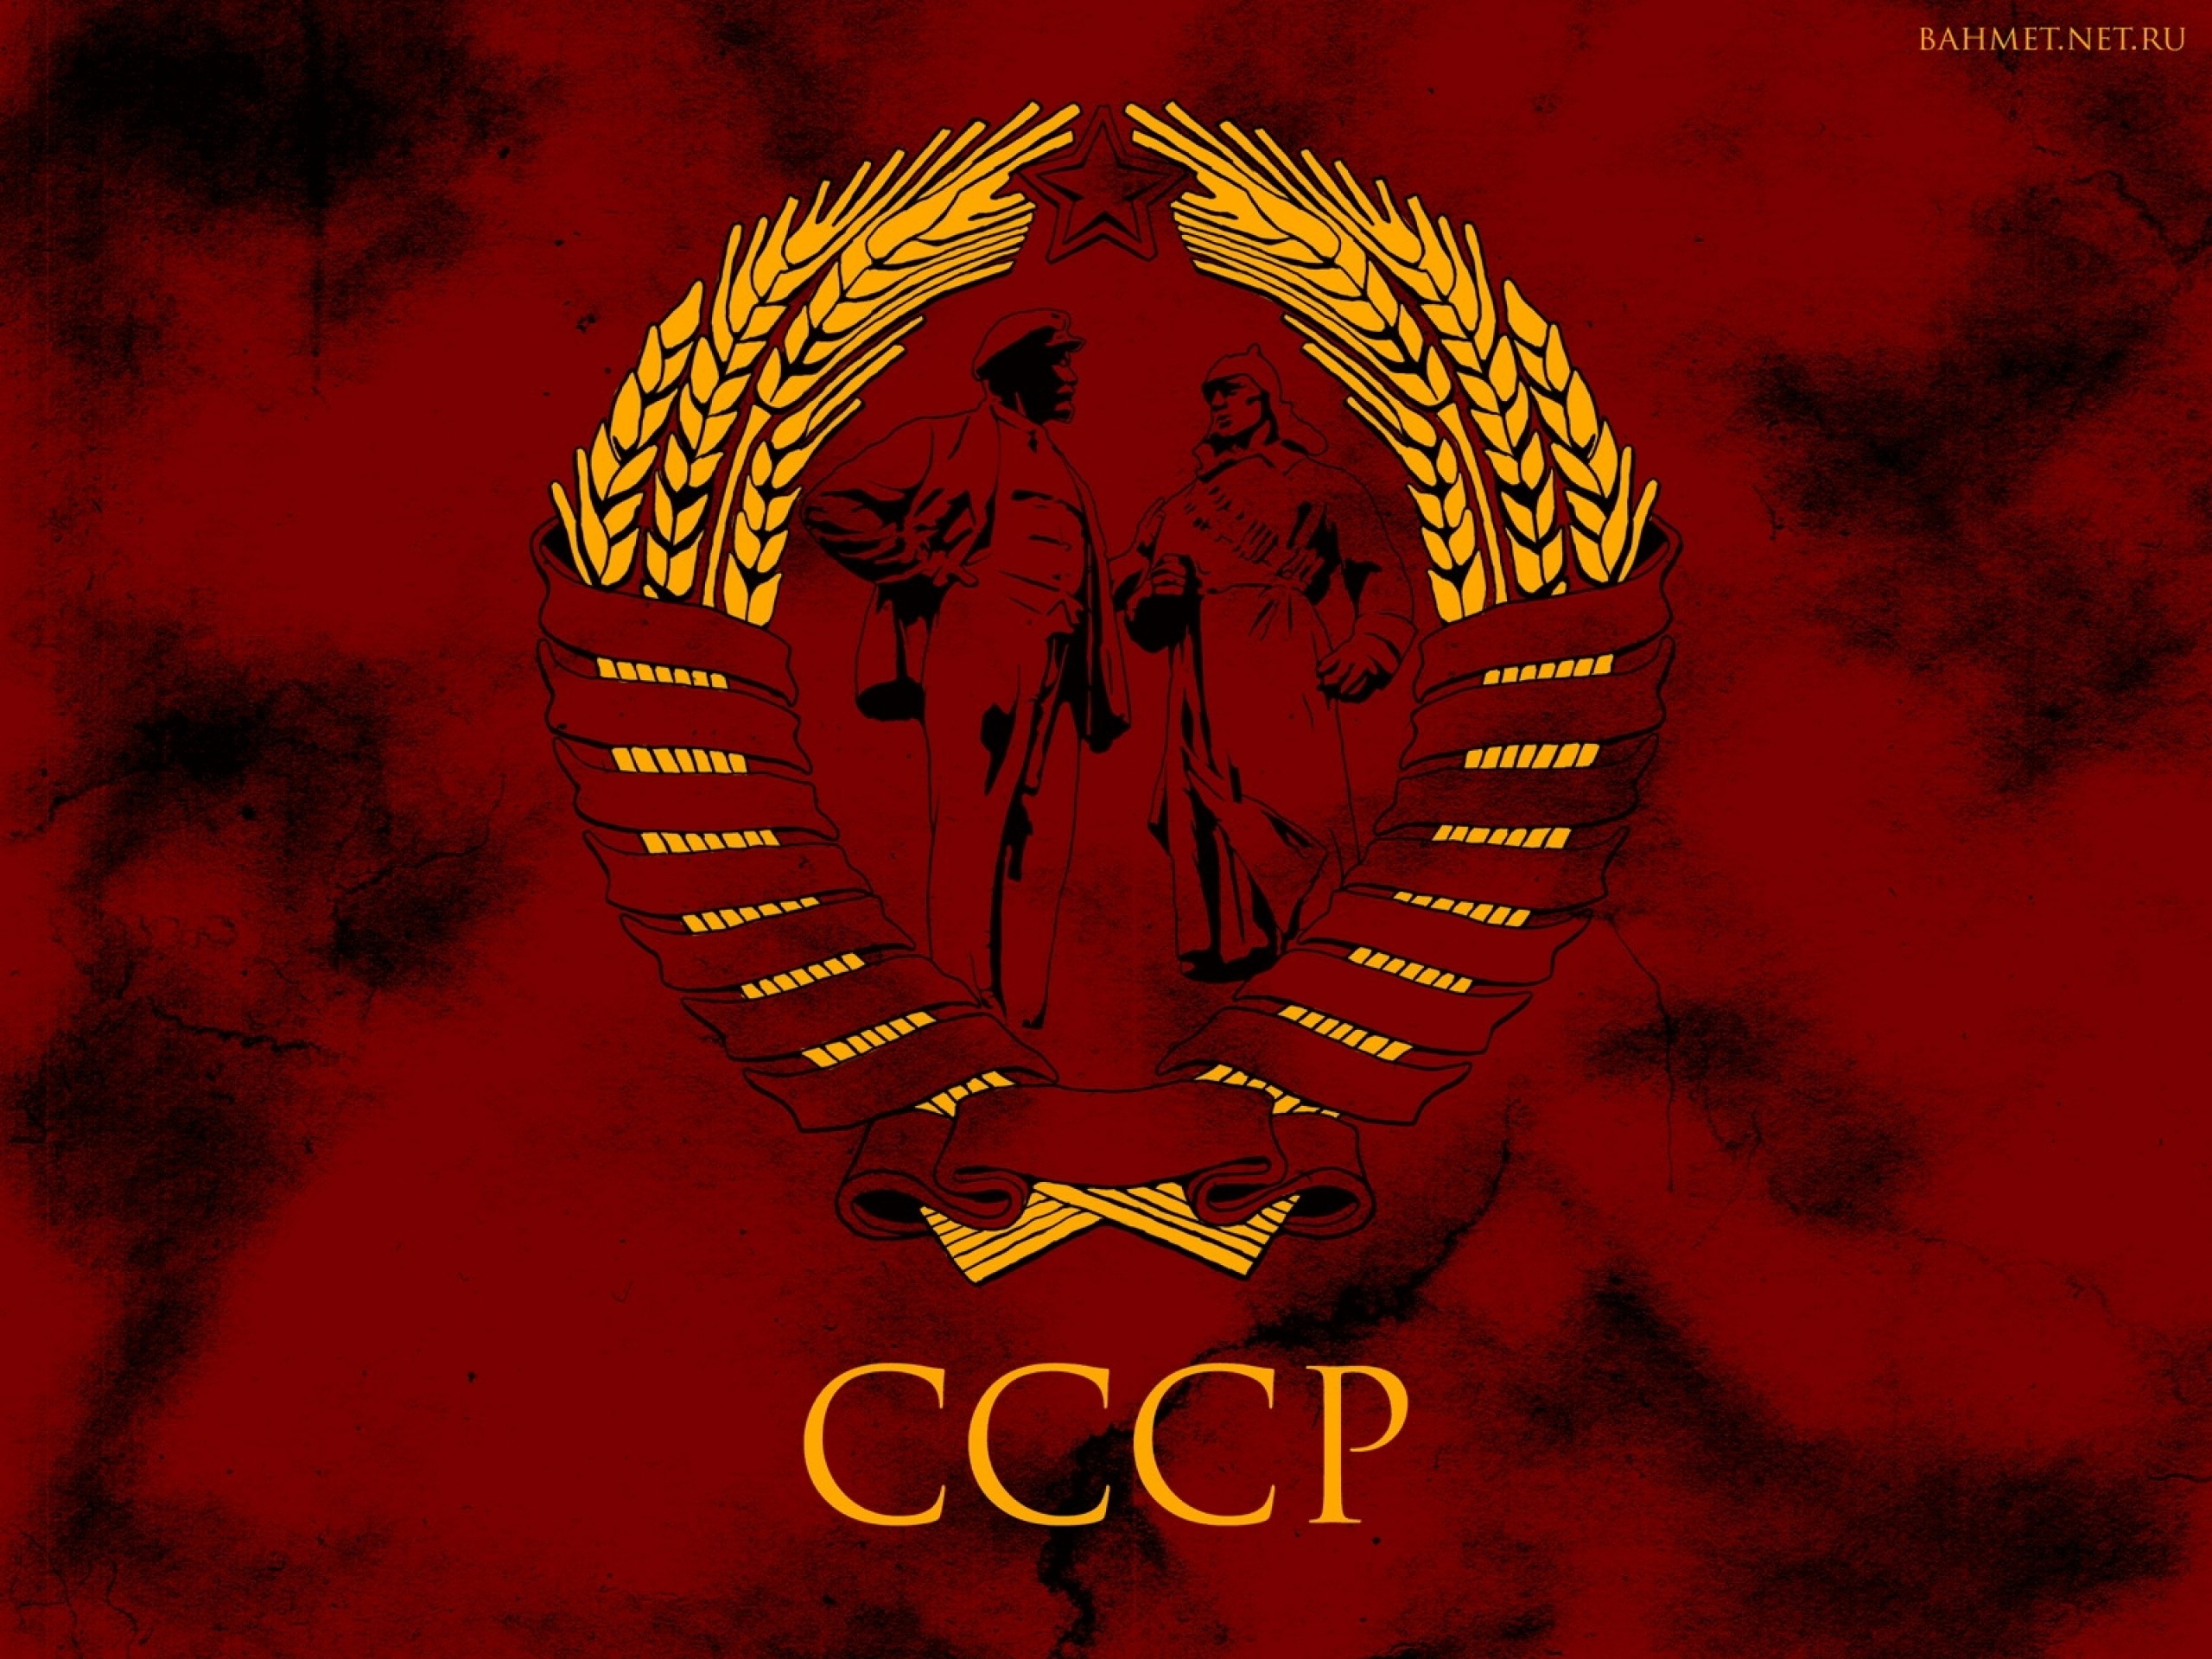 cccp wallpaper,red,font,logo,emblem,graphics